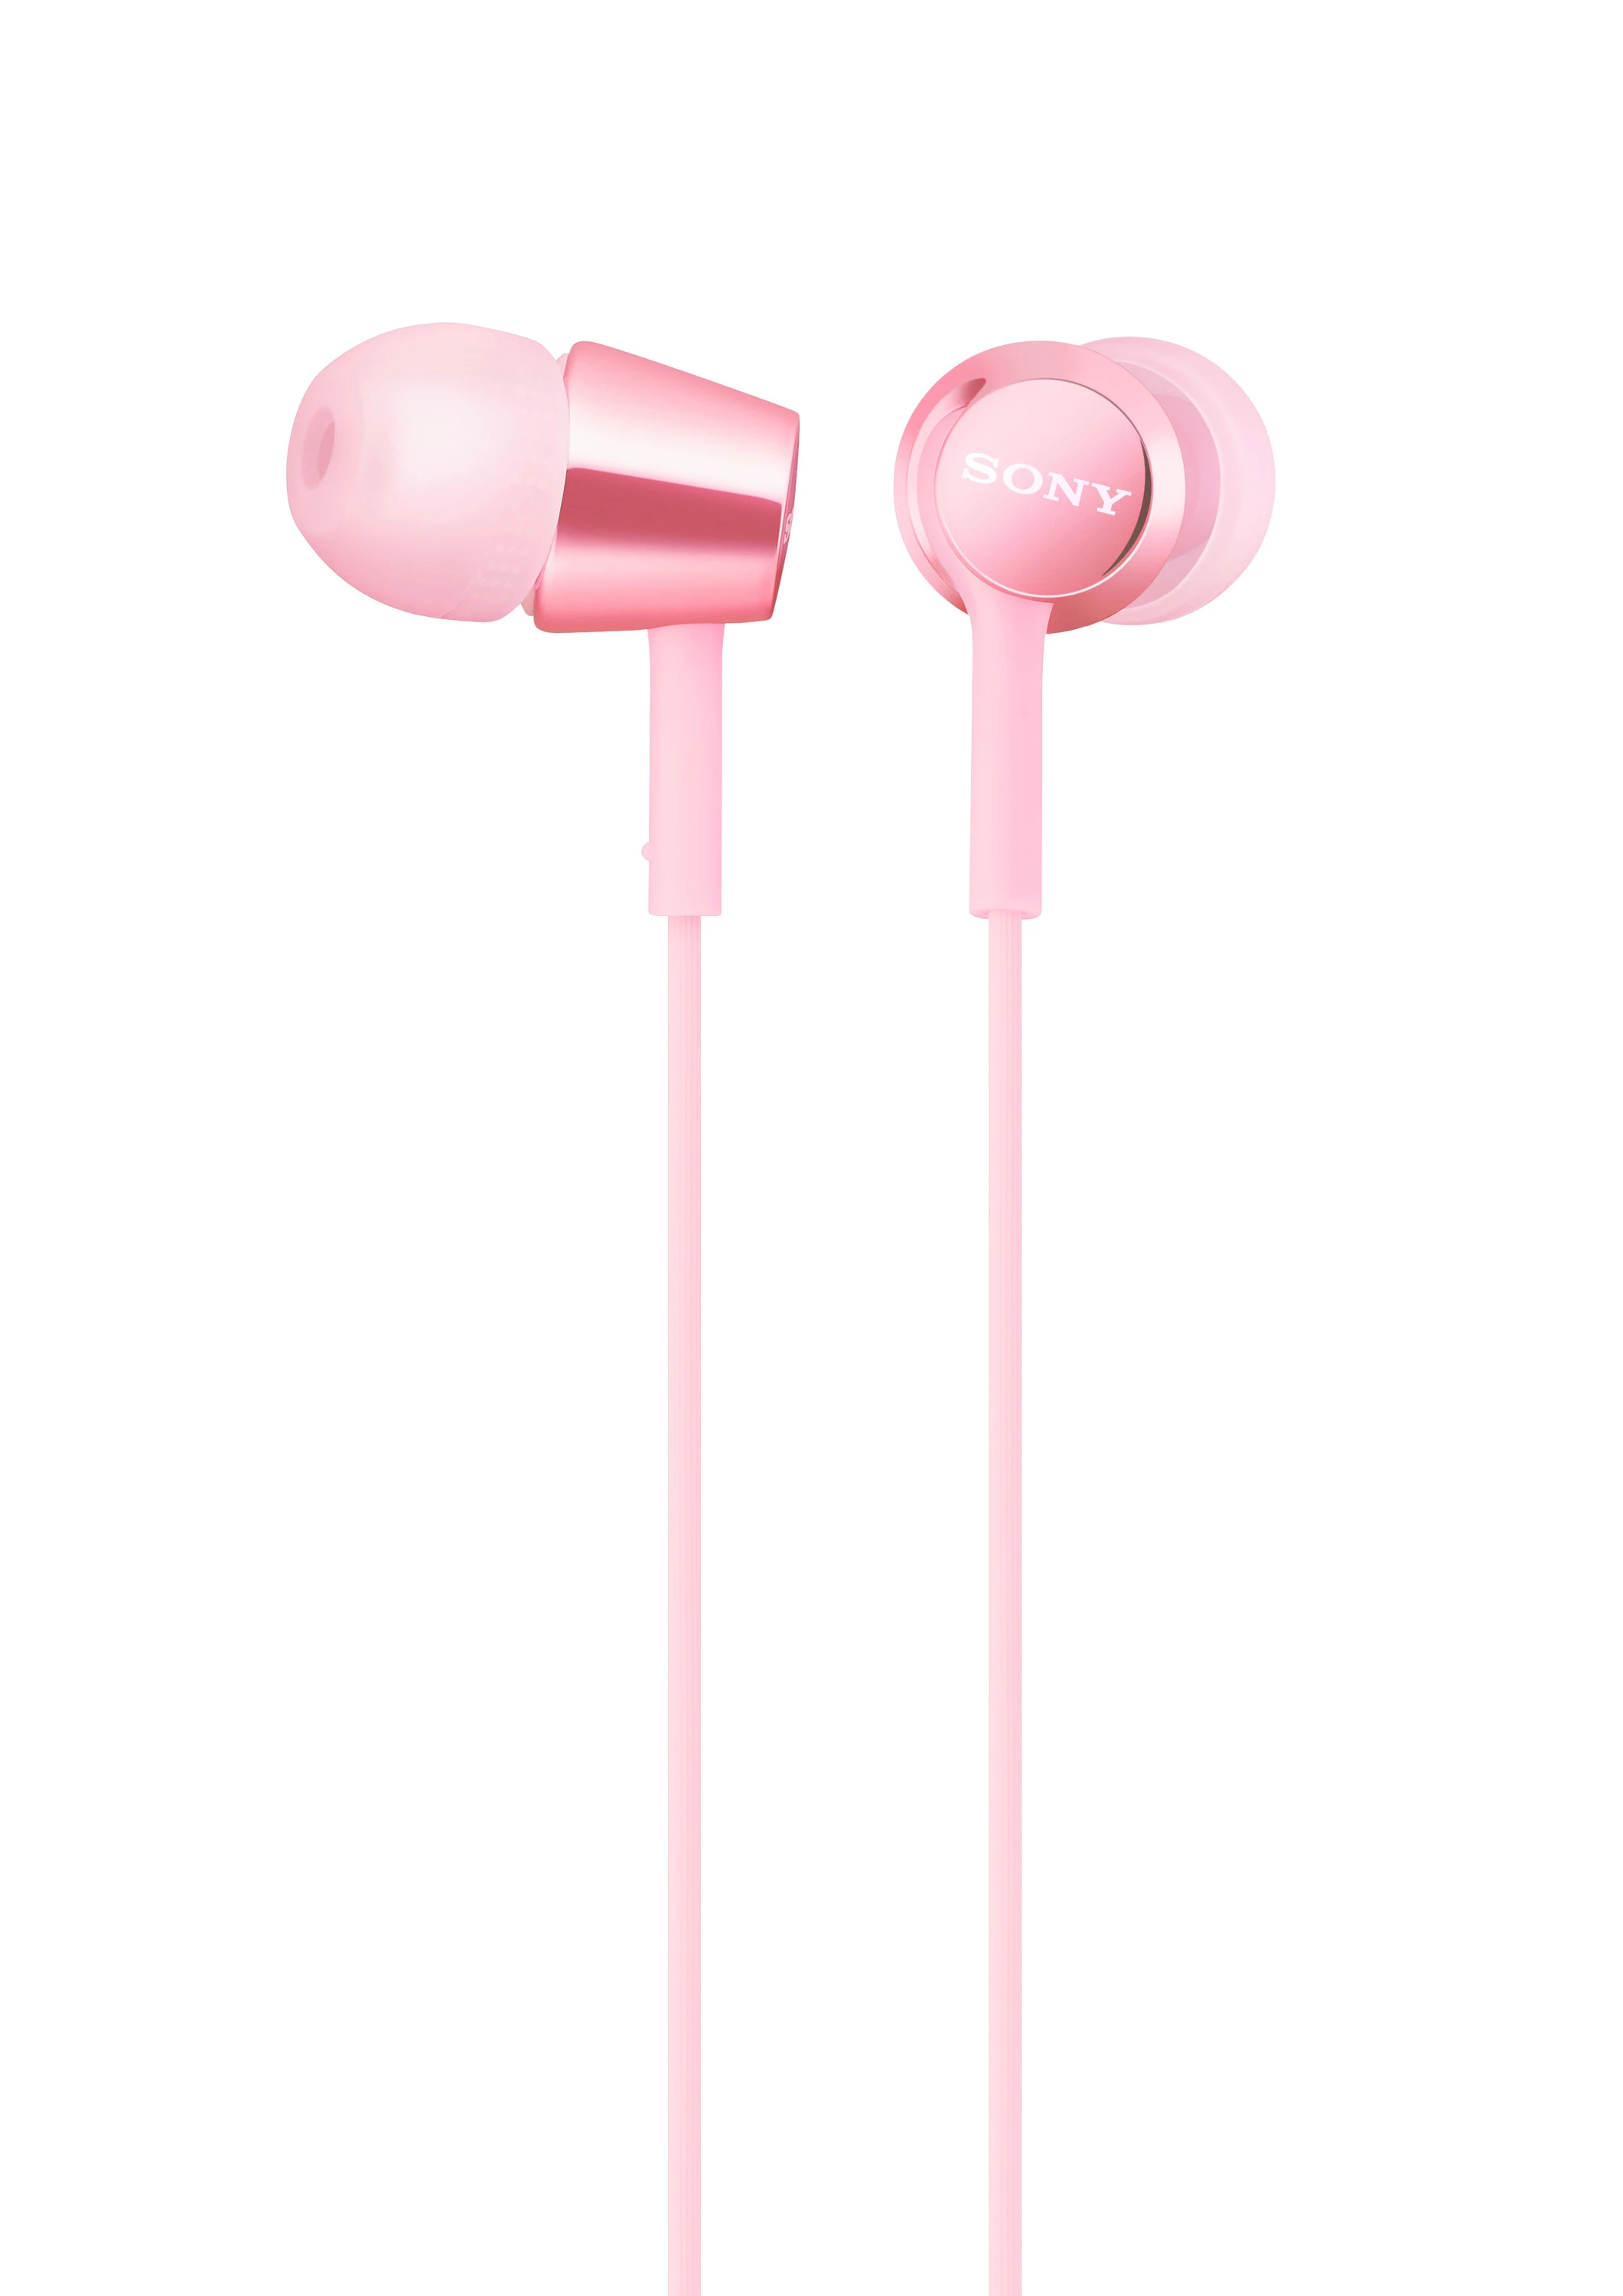 Sony MDR-EX155AP 入耳式立體聲耳機 (粉紅色) #4-697-434-22